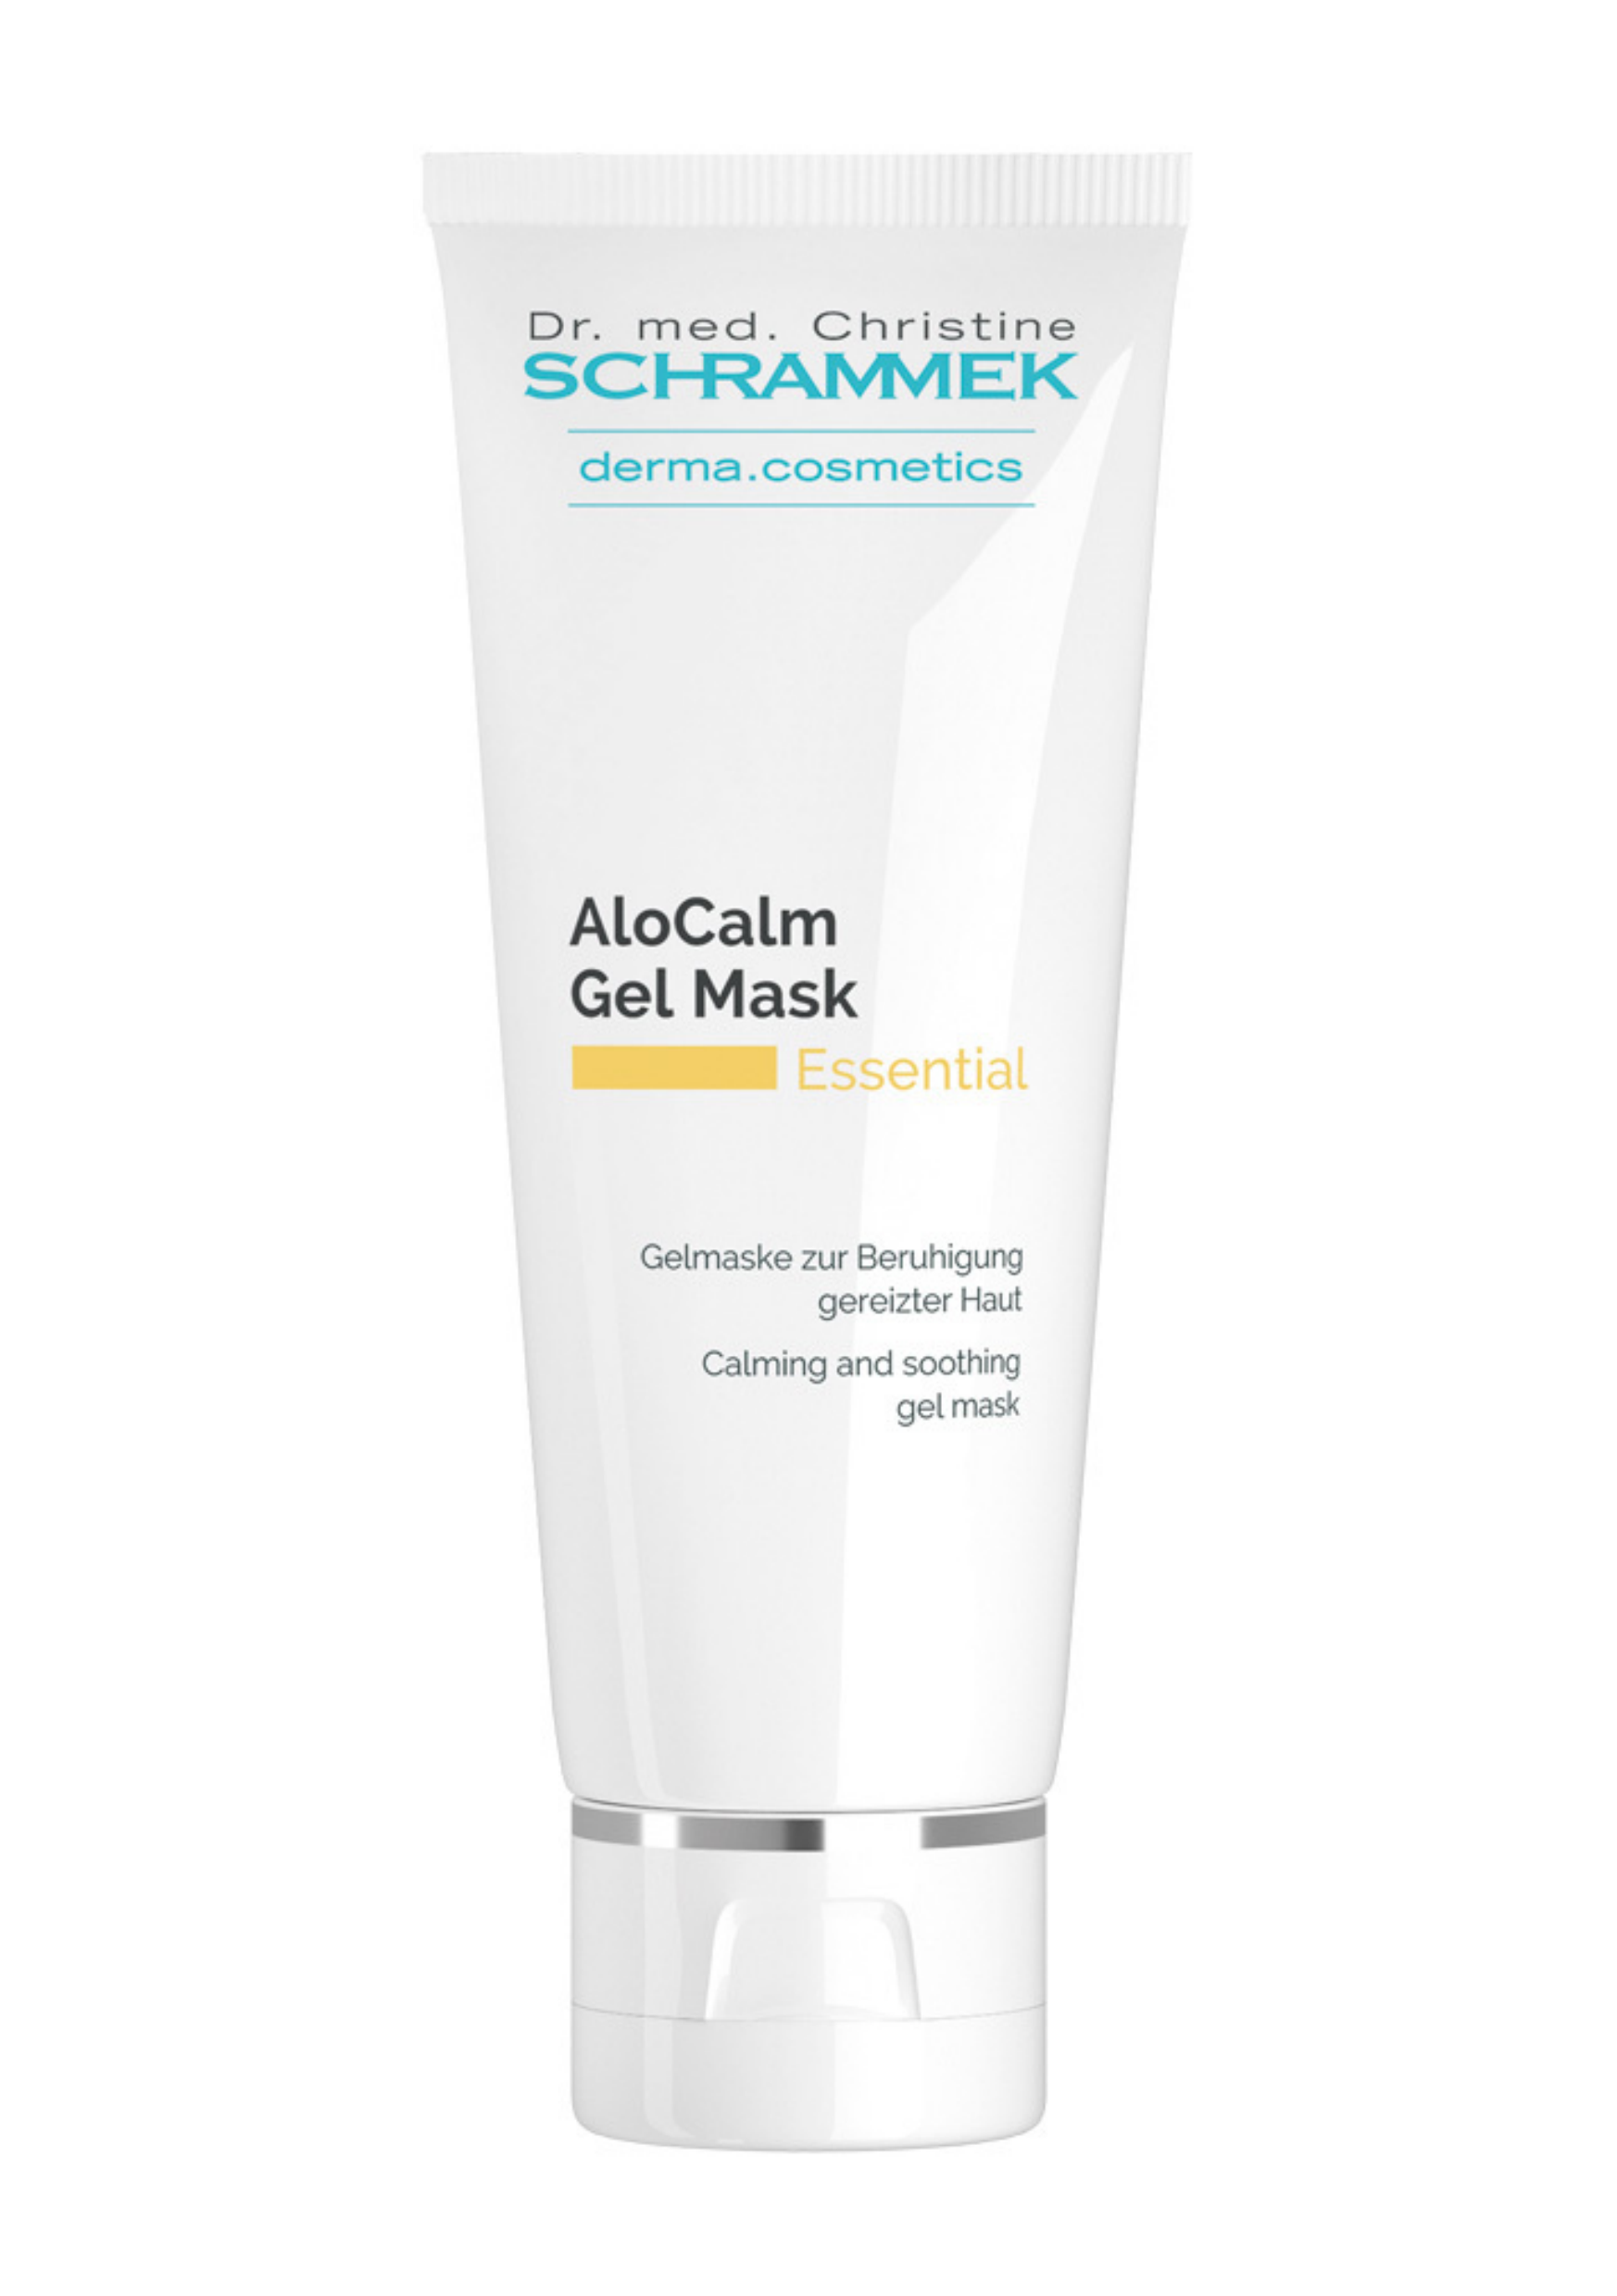 Dr Schrammek Essential AloCalm Gel Mask